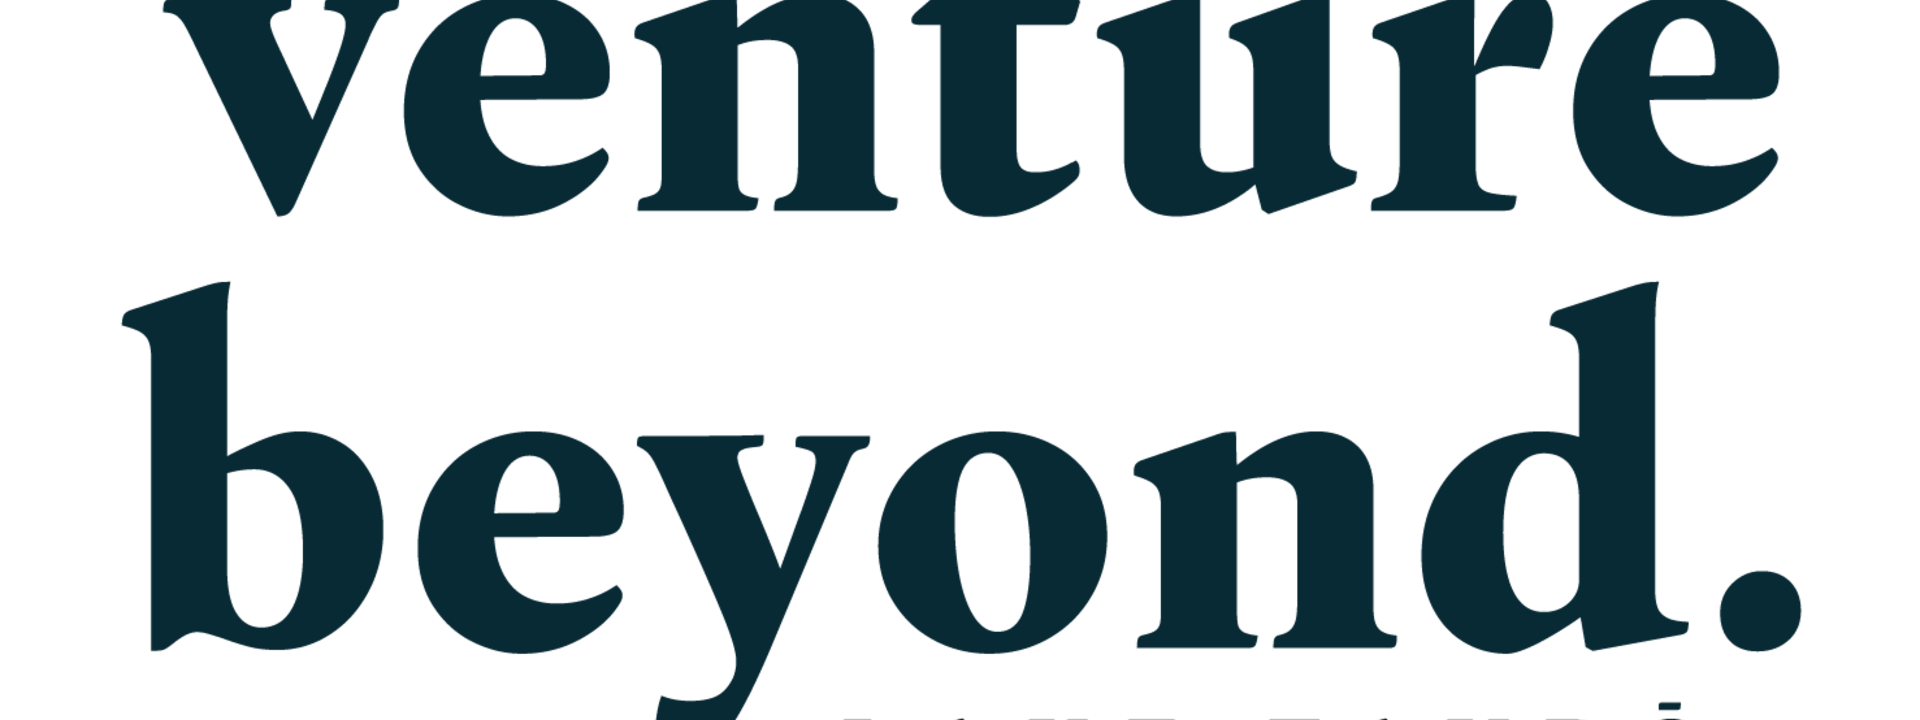 venture beyond logos.png